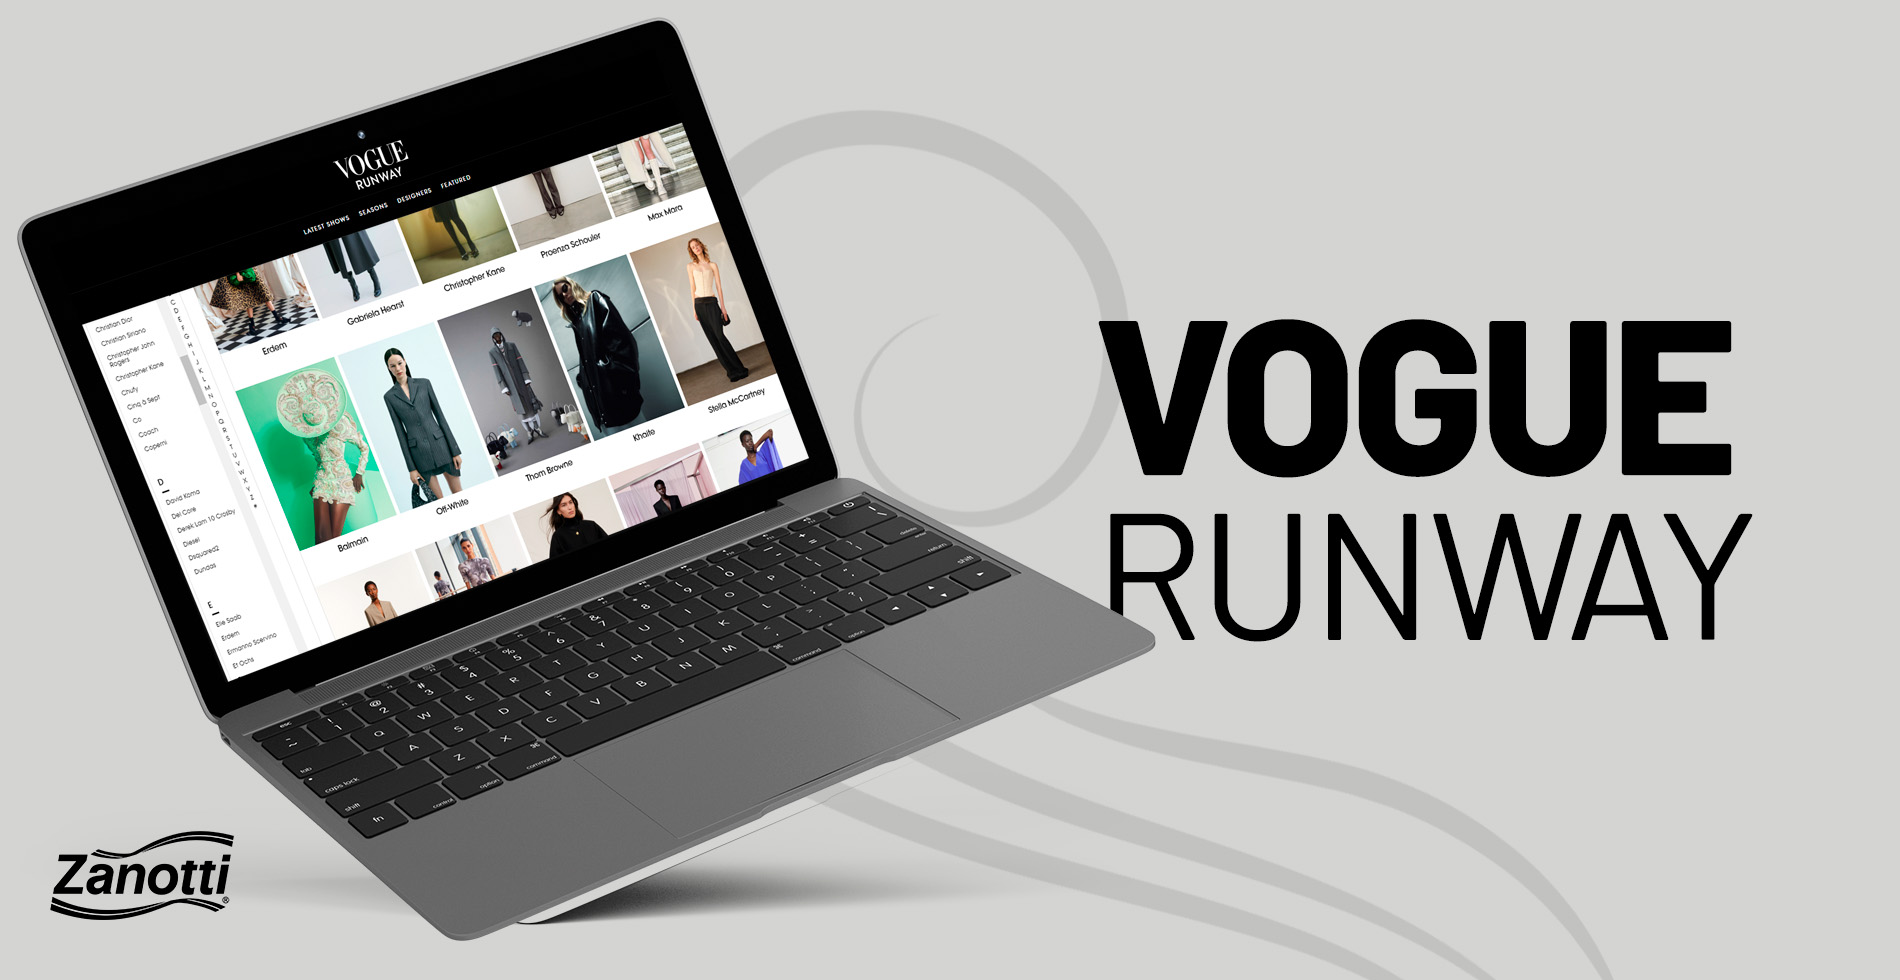 Notebook aberto no aplicativo Vogue Runway, um dos melhores aplicativos para estilistas com várias tendências de moda